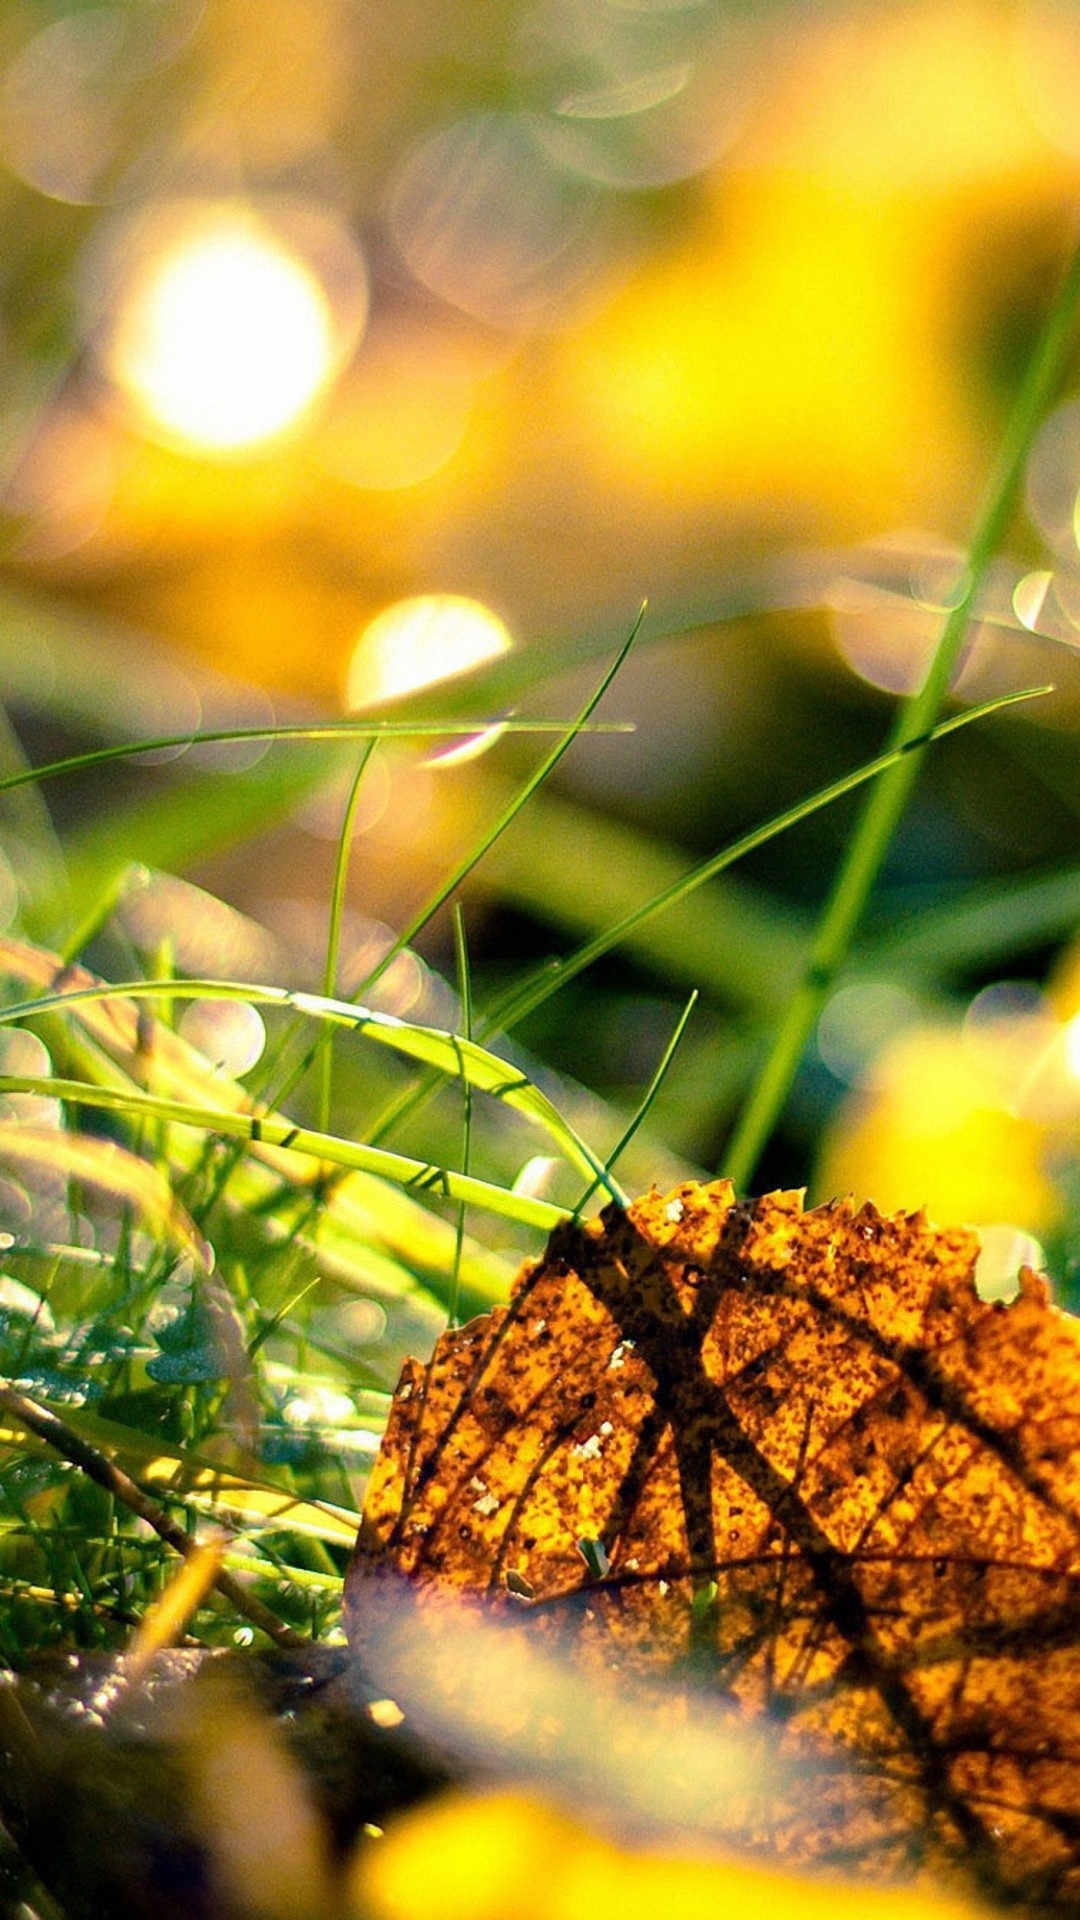 モバイル用の壁紙hd 1080p無料ダウンロード,自然,草,葉,自然の風景,日光